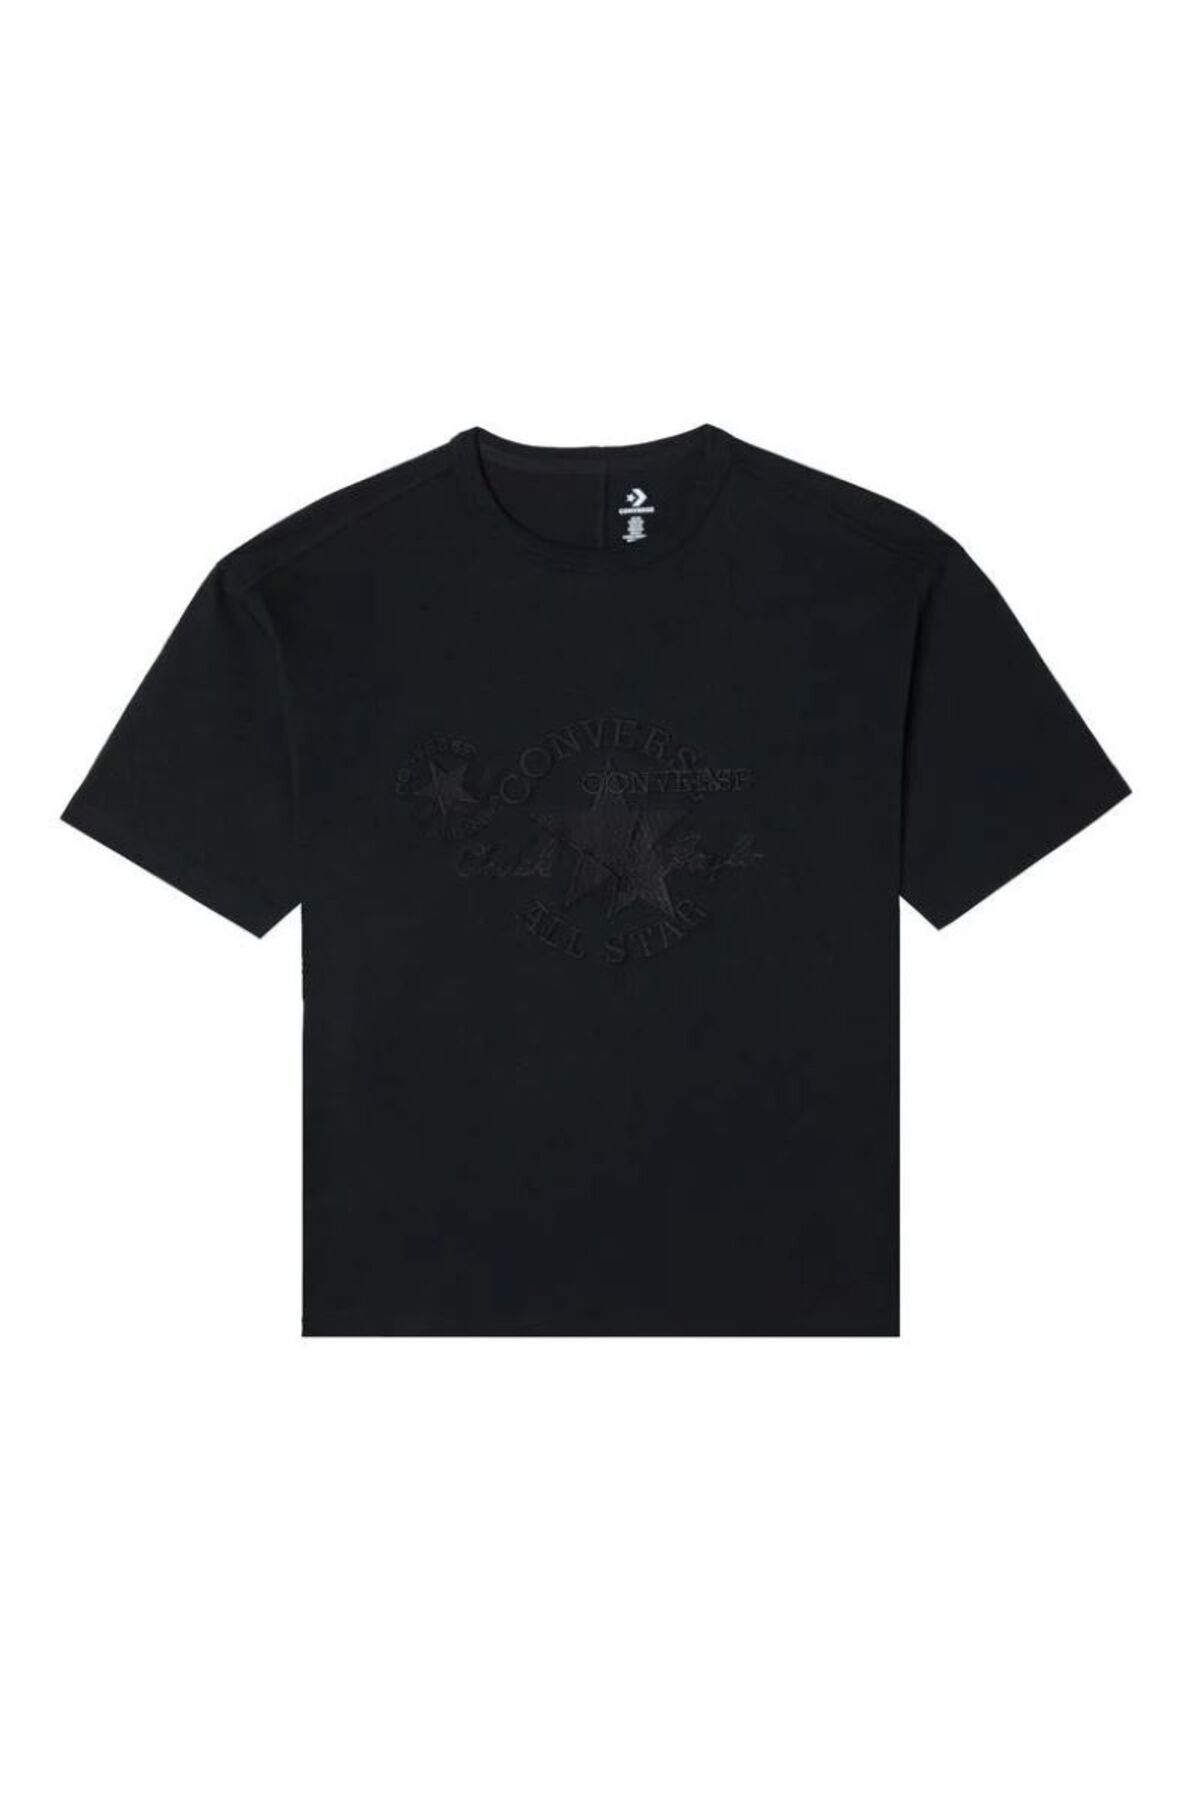 Converse Chuck 70S Embroidered Kadın Siyah T-Shirt TİŞÖRT GENİŞ KALIP OVERSİZE